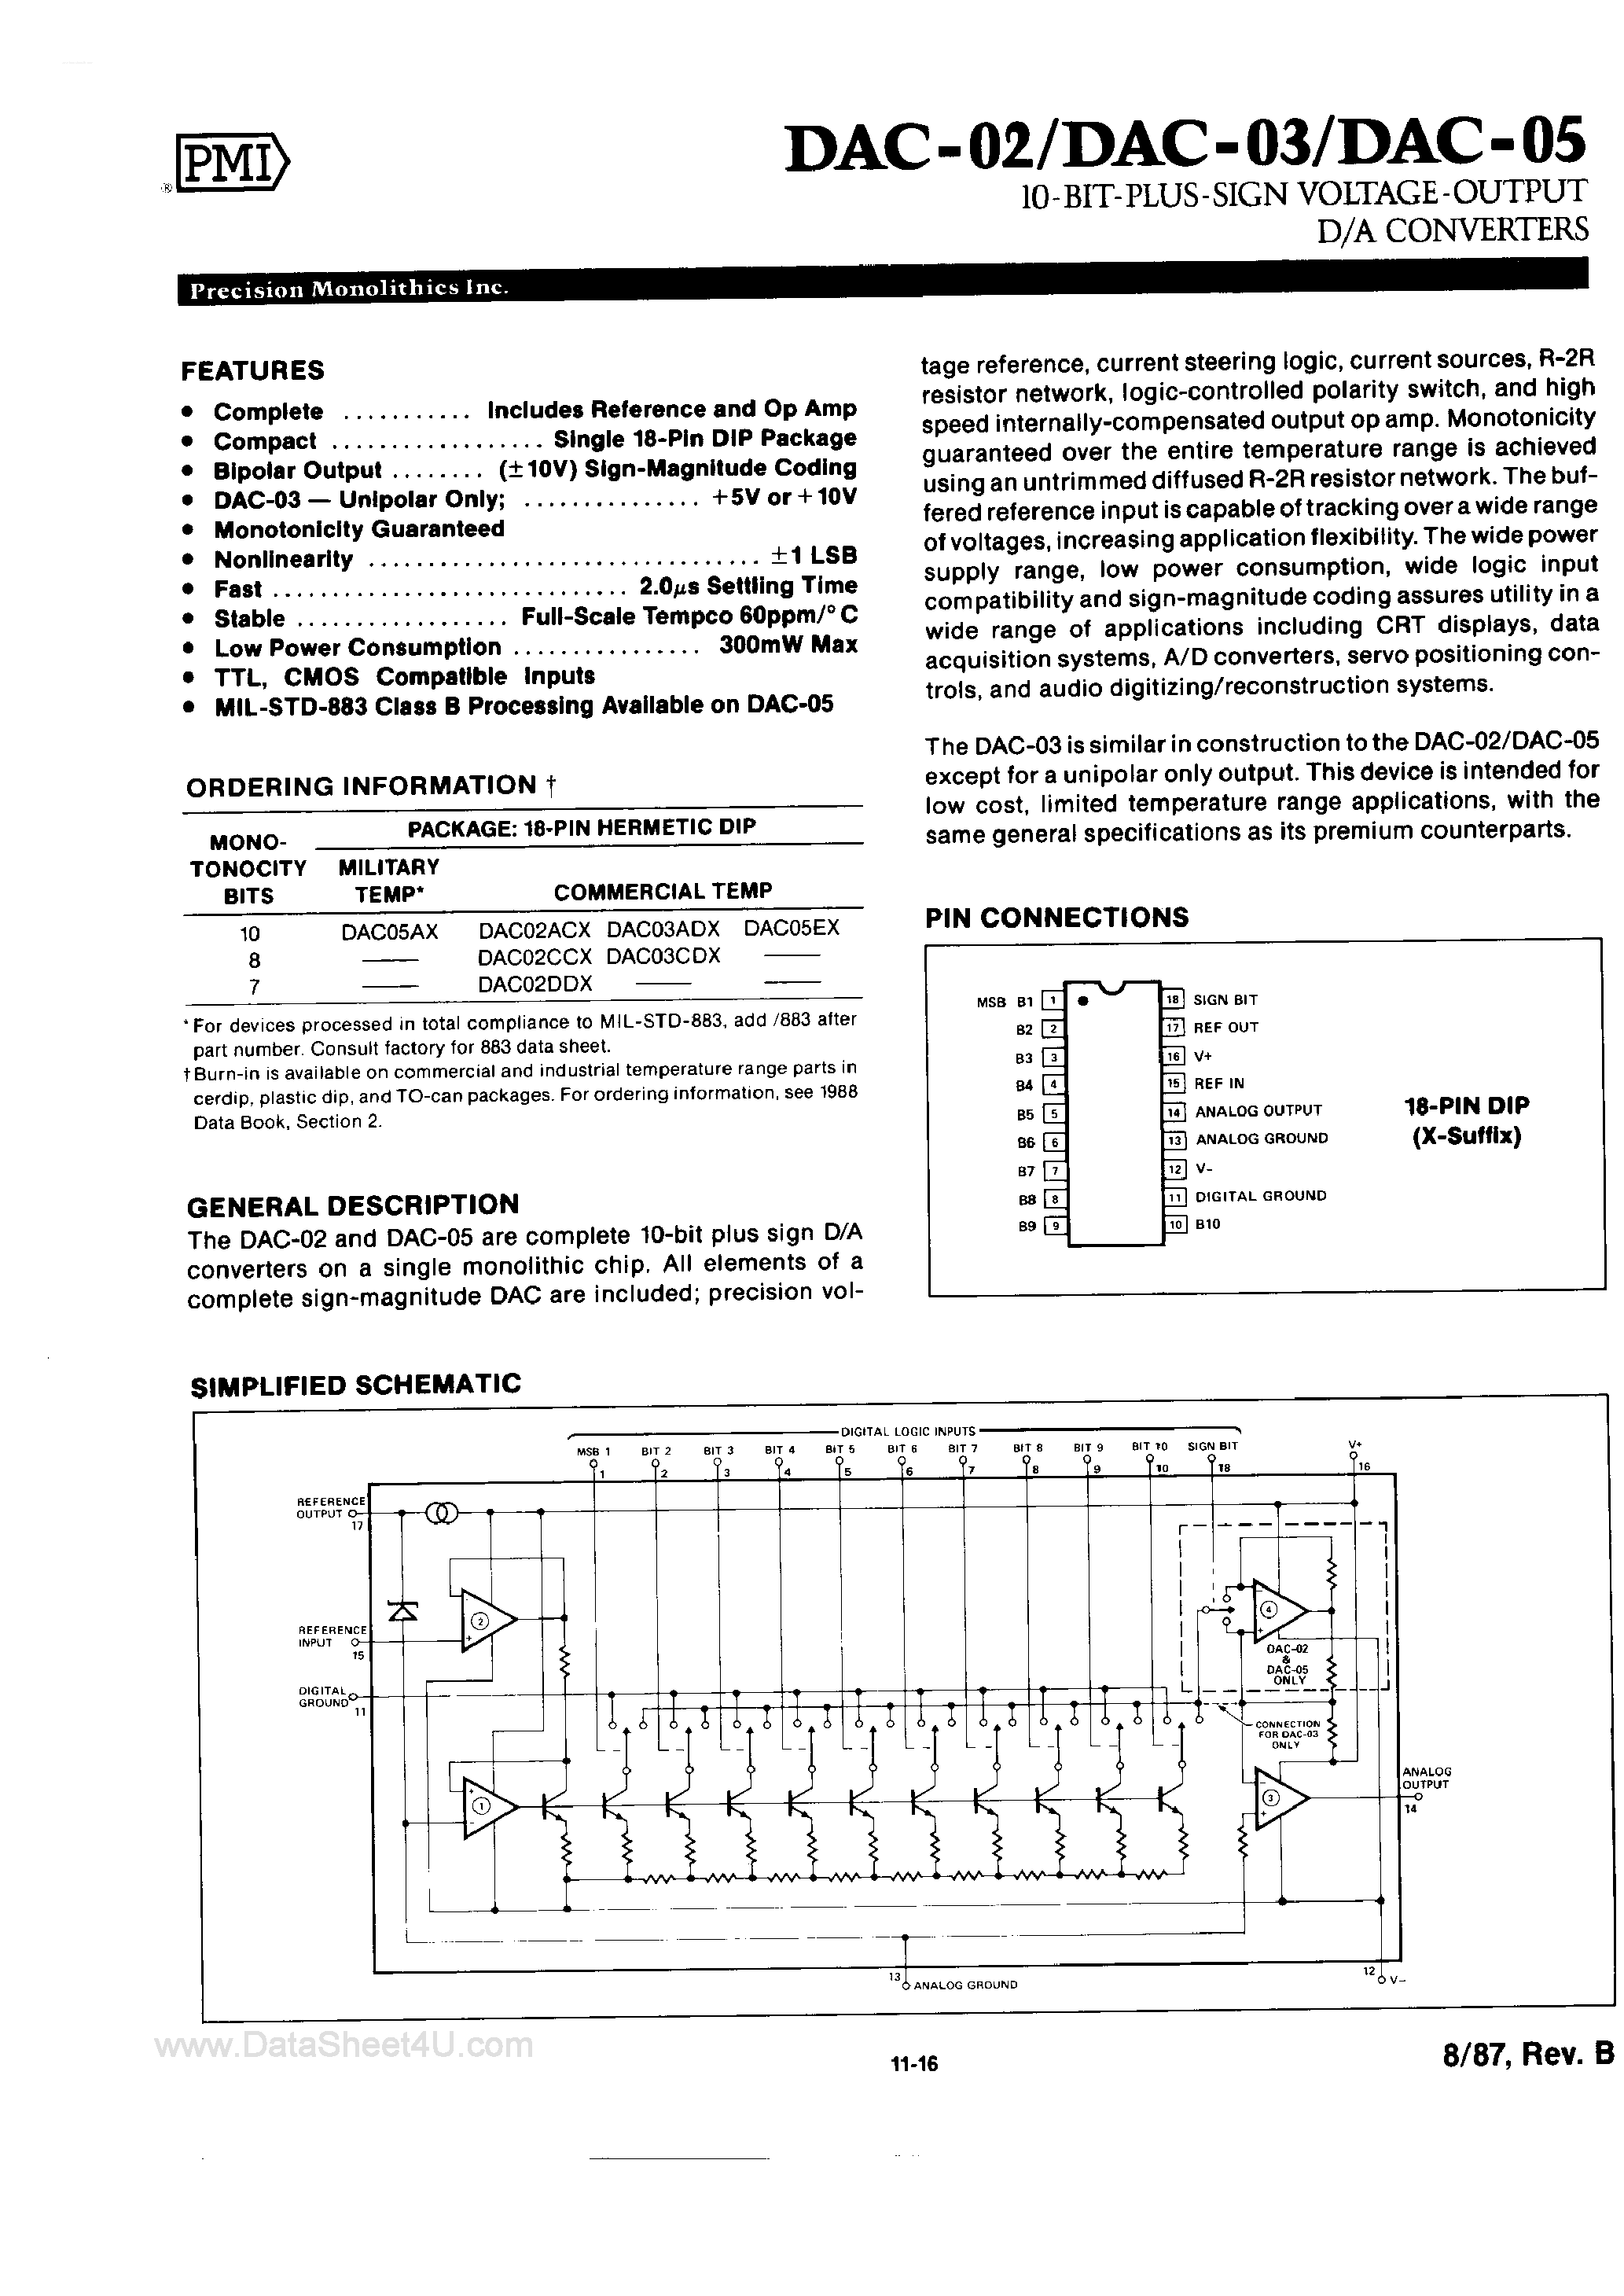 Даташит DAC-02 - (DAC-0x) 10-Bit Plus Sign Voltage Output D/A Converters страница 1